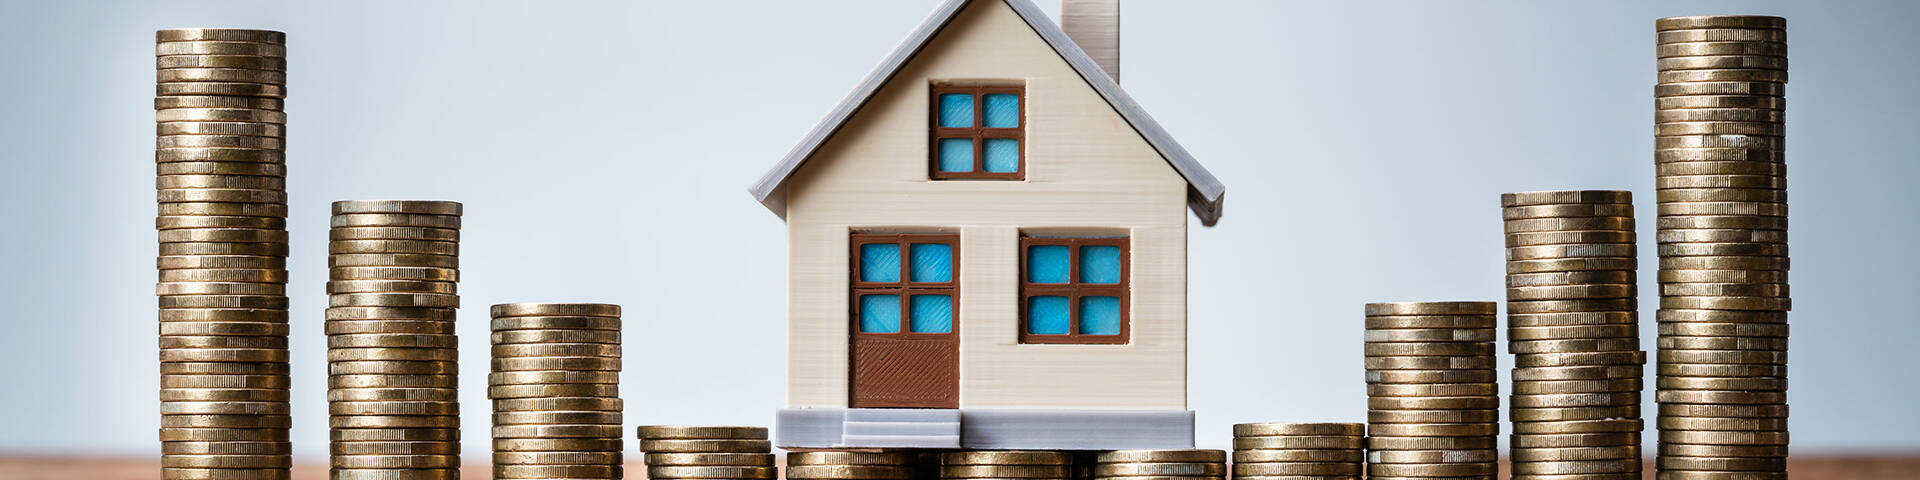 Miniaturhaus und Münzstapel als Symbol für die Inflation